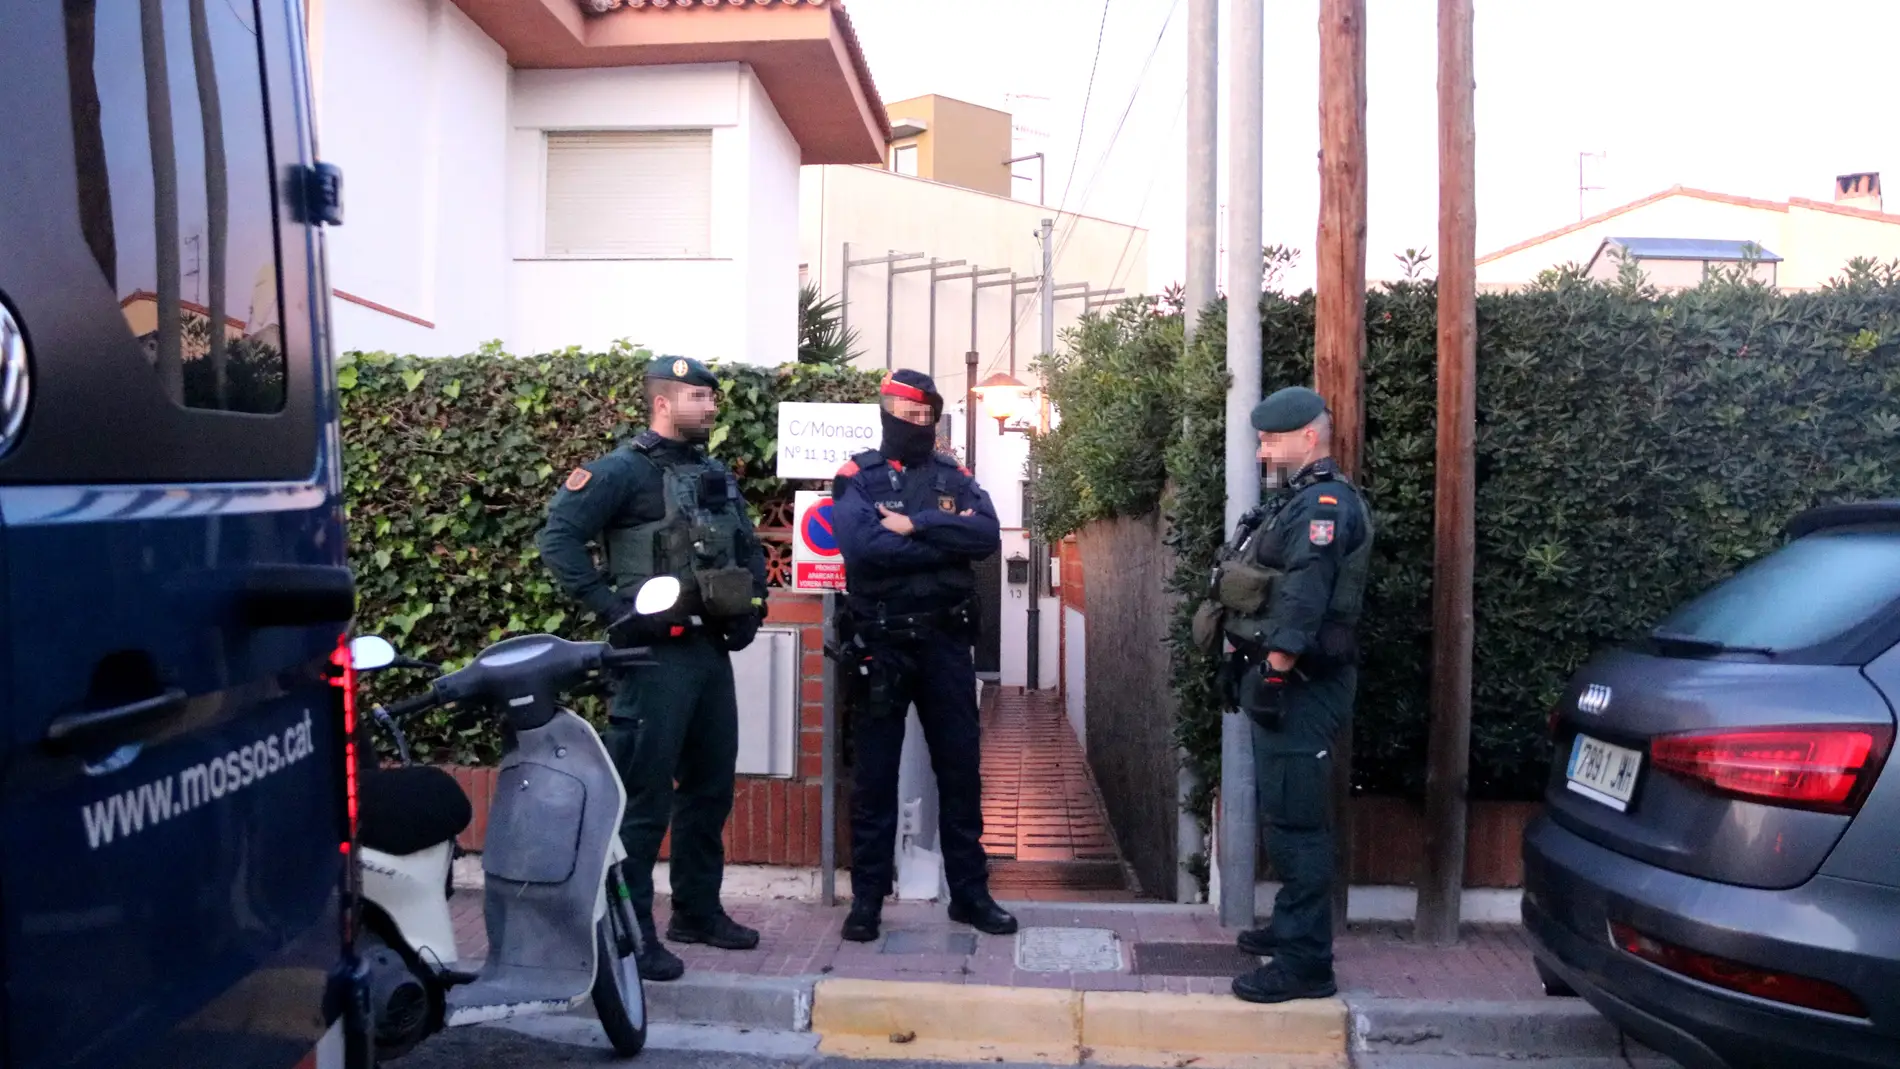 Activat un dispositiu policial contra el terrorisme gihadista a la província de Barcelona i Extremadura